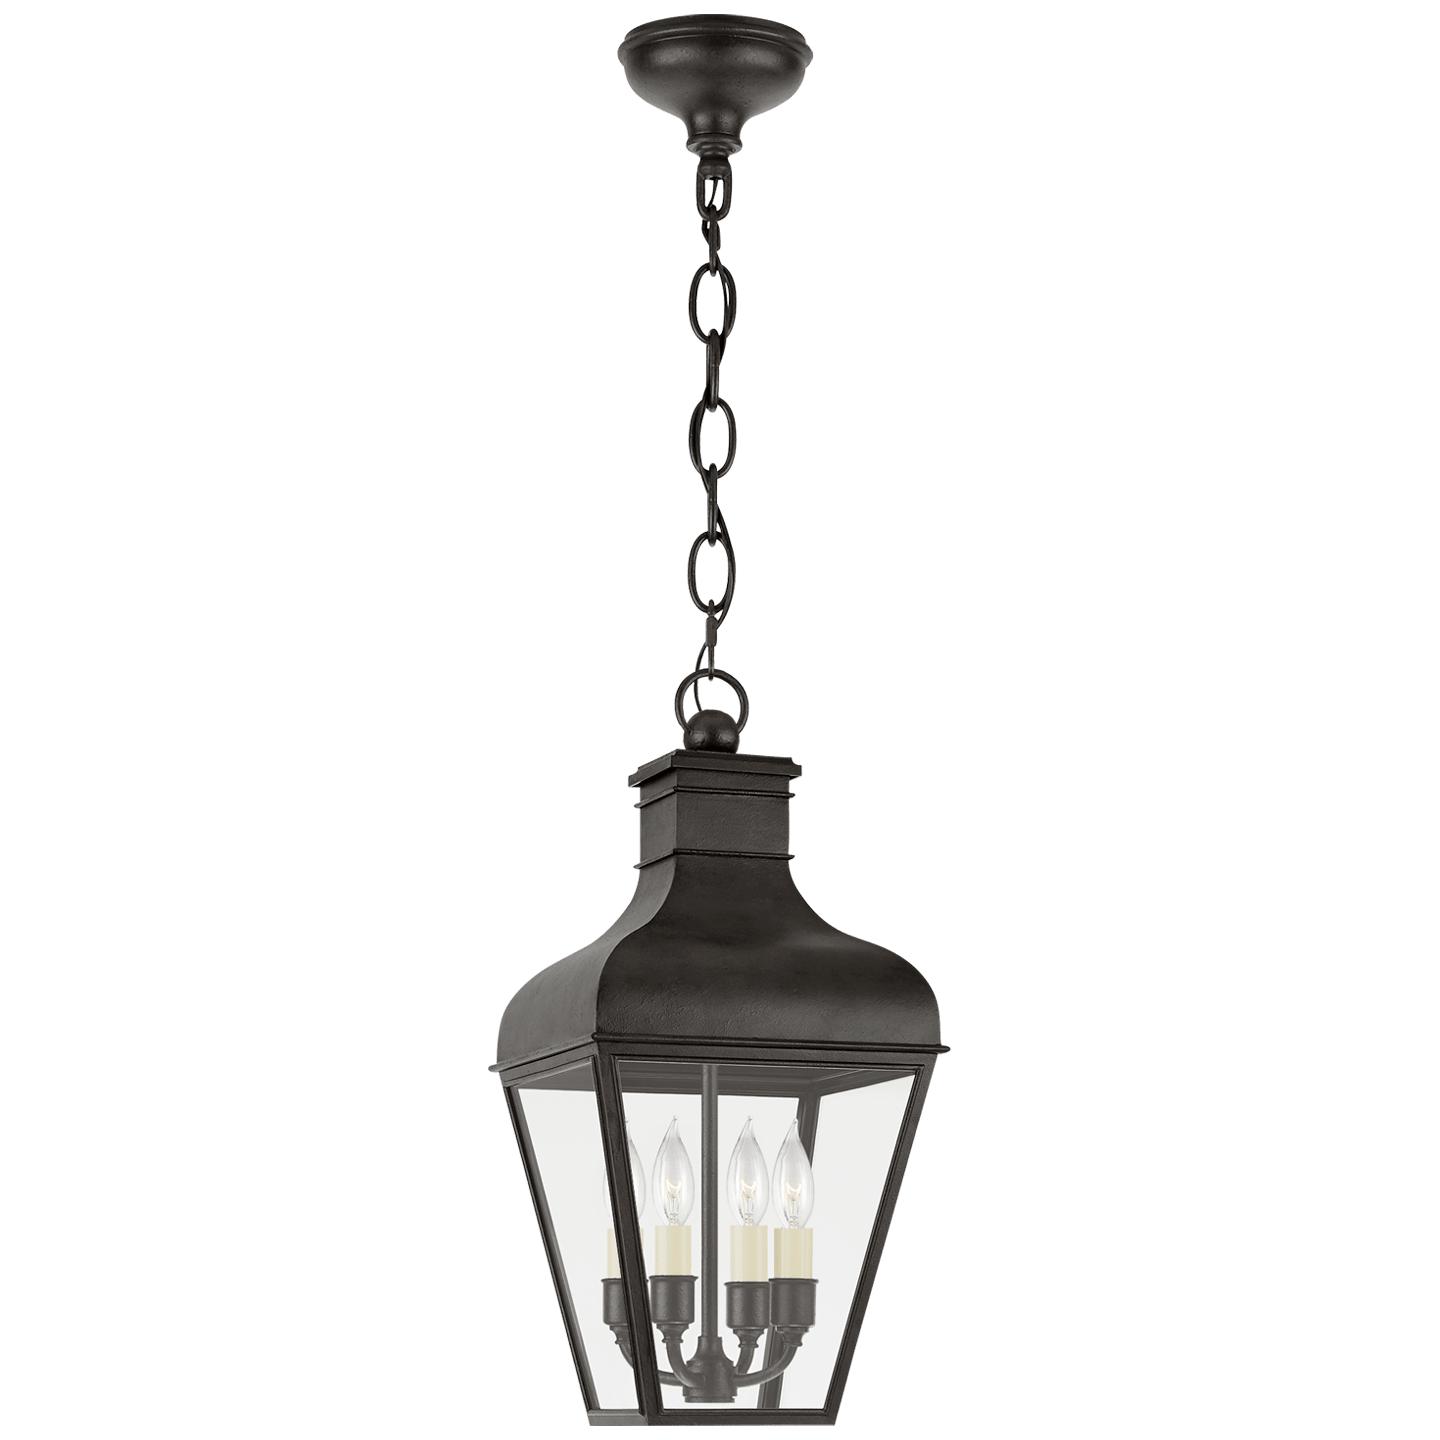 Купить Подвесной светильник Fremont Small Hanging Lantern в интернет-магазине roooms.ru